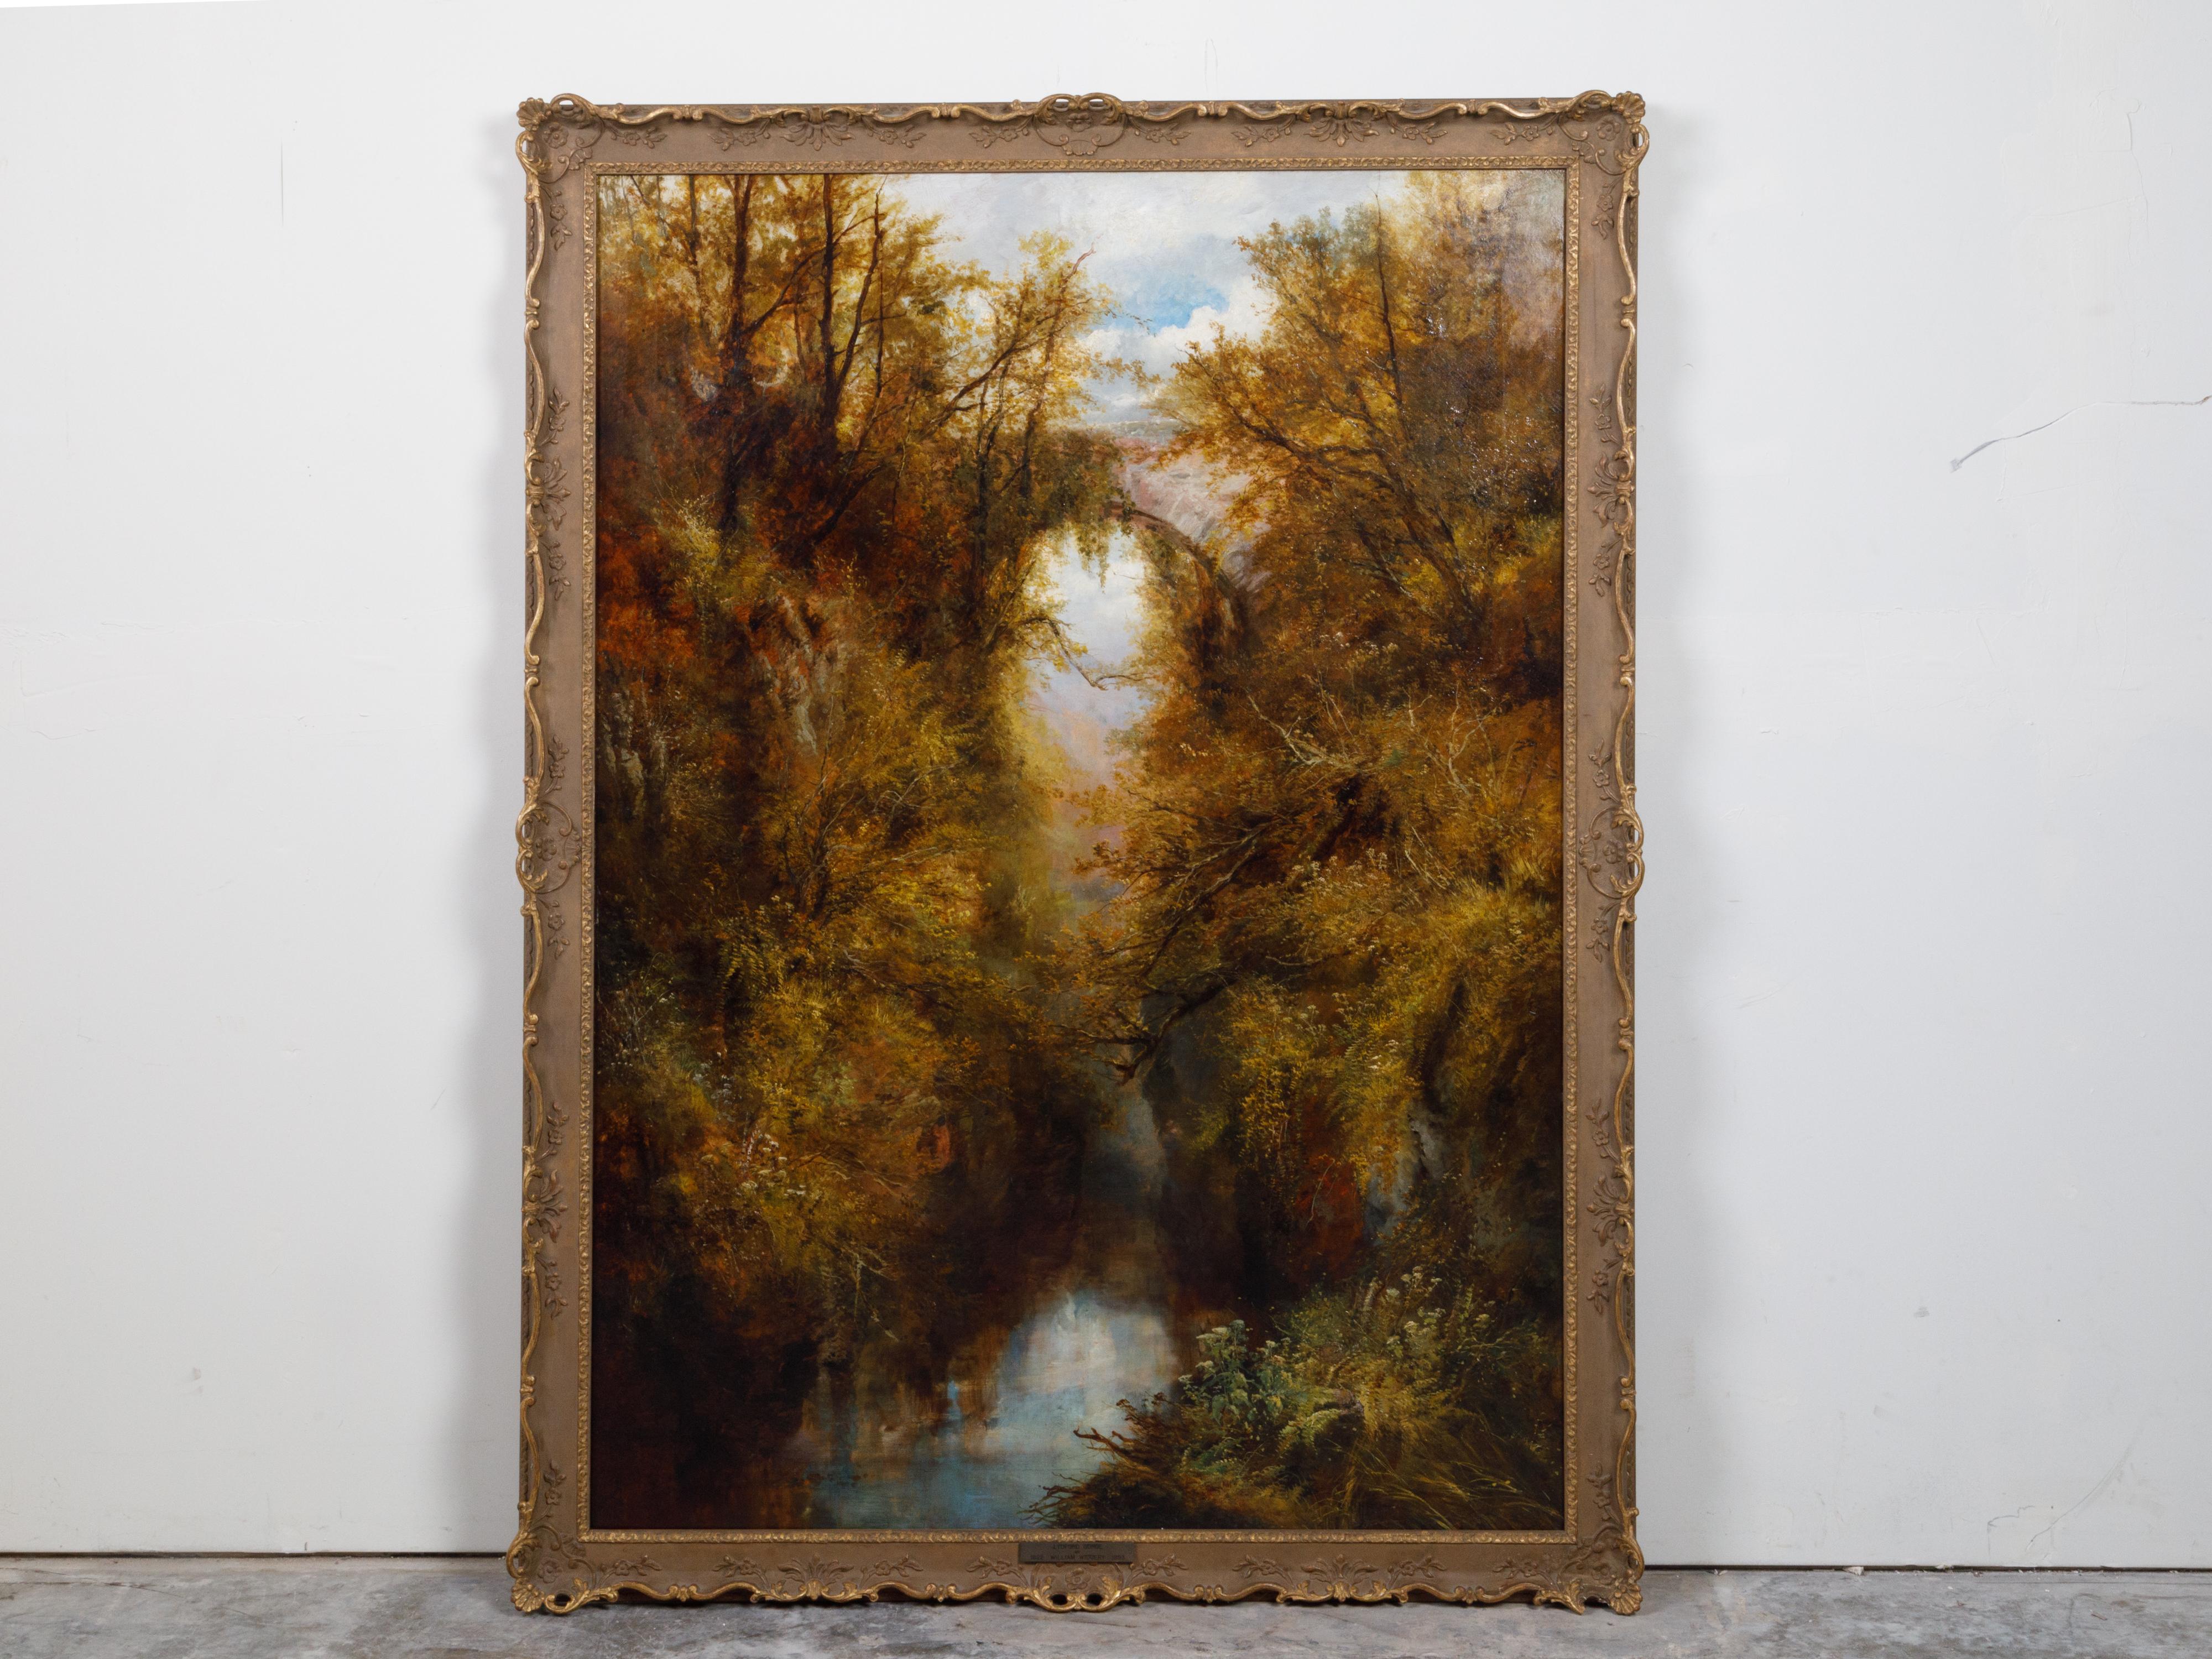 Ein englisches Landschaftsgemälde in Öl auf Leinwand von William Widgery (1822-1893) aus dem späten 19. Jahrhundert, das die Lydford-Schlucht zeigt, in einem geschnitzten Rahmen. Diese vertikale Landschaft entstand in der zweiten Hälfte des 19.